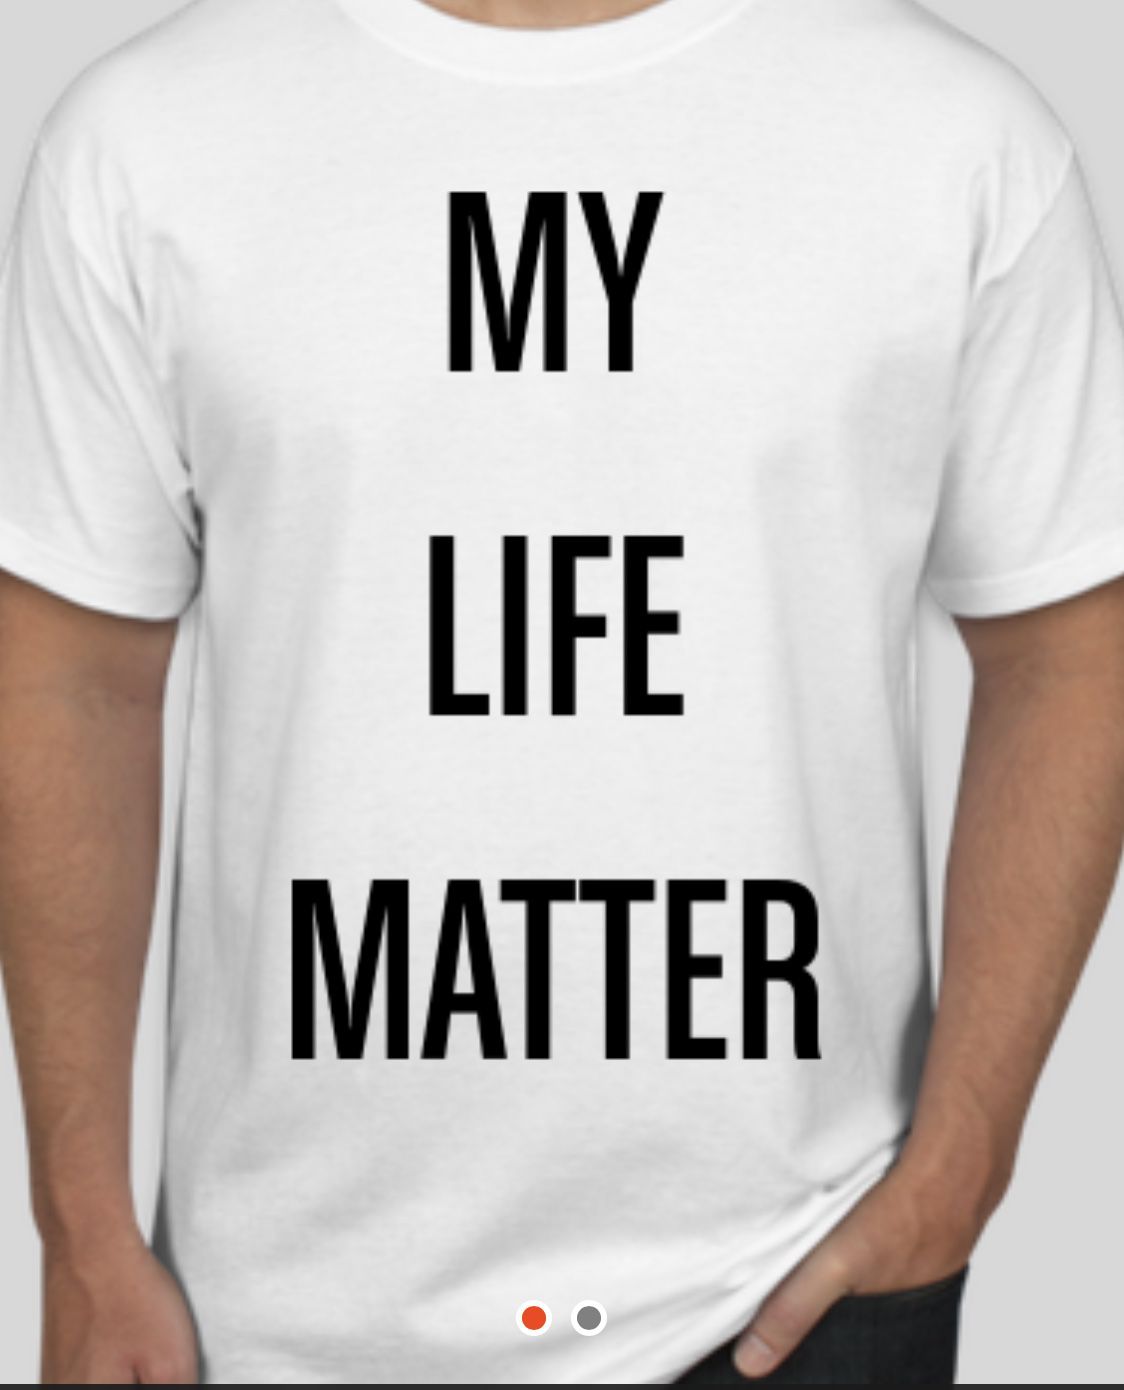 “My Life Matter” “All Lives Matter”